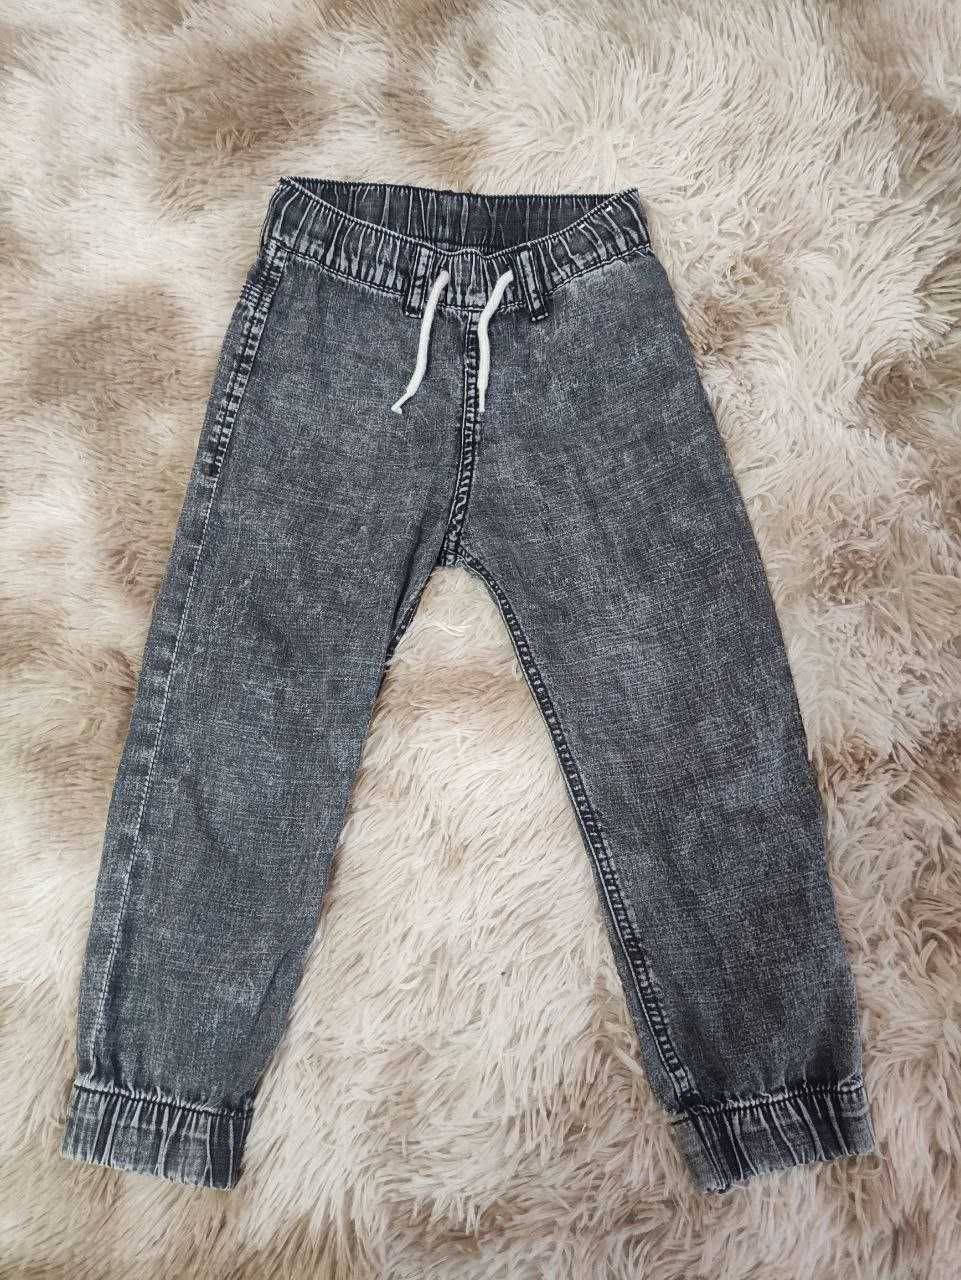 Літні джинси, джогери  на хлопчика HM 3-4 роки